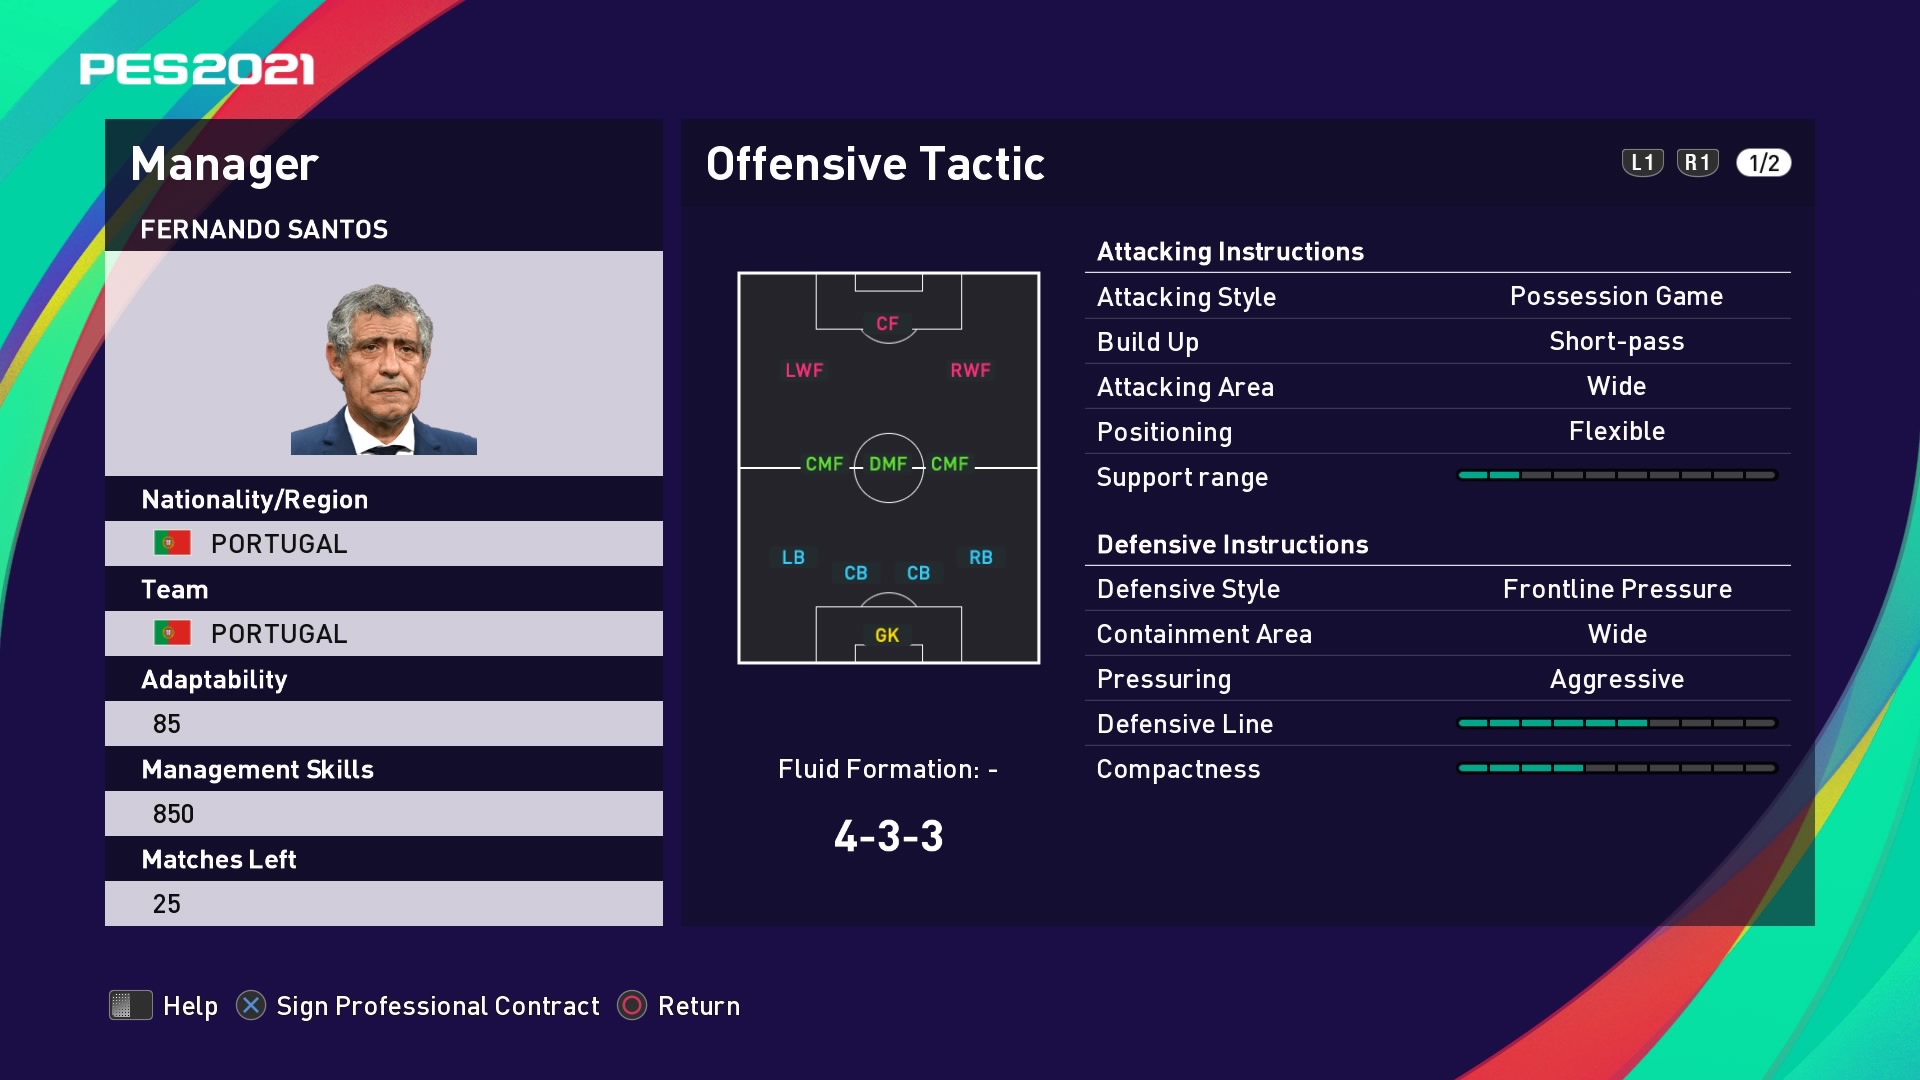 Fernando Santos Offensive Tactic in PES 2021 myClub